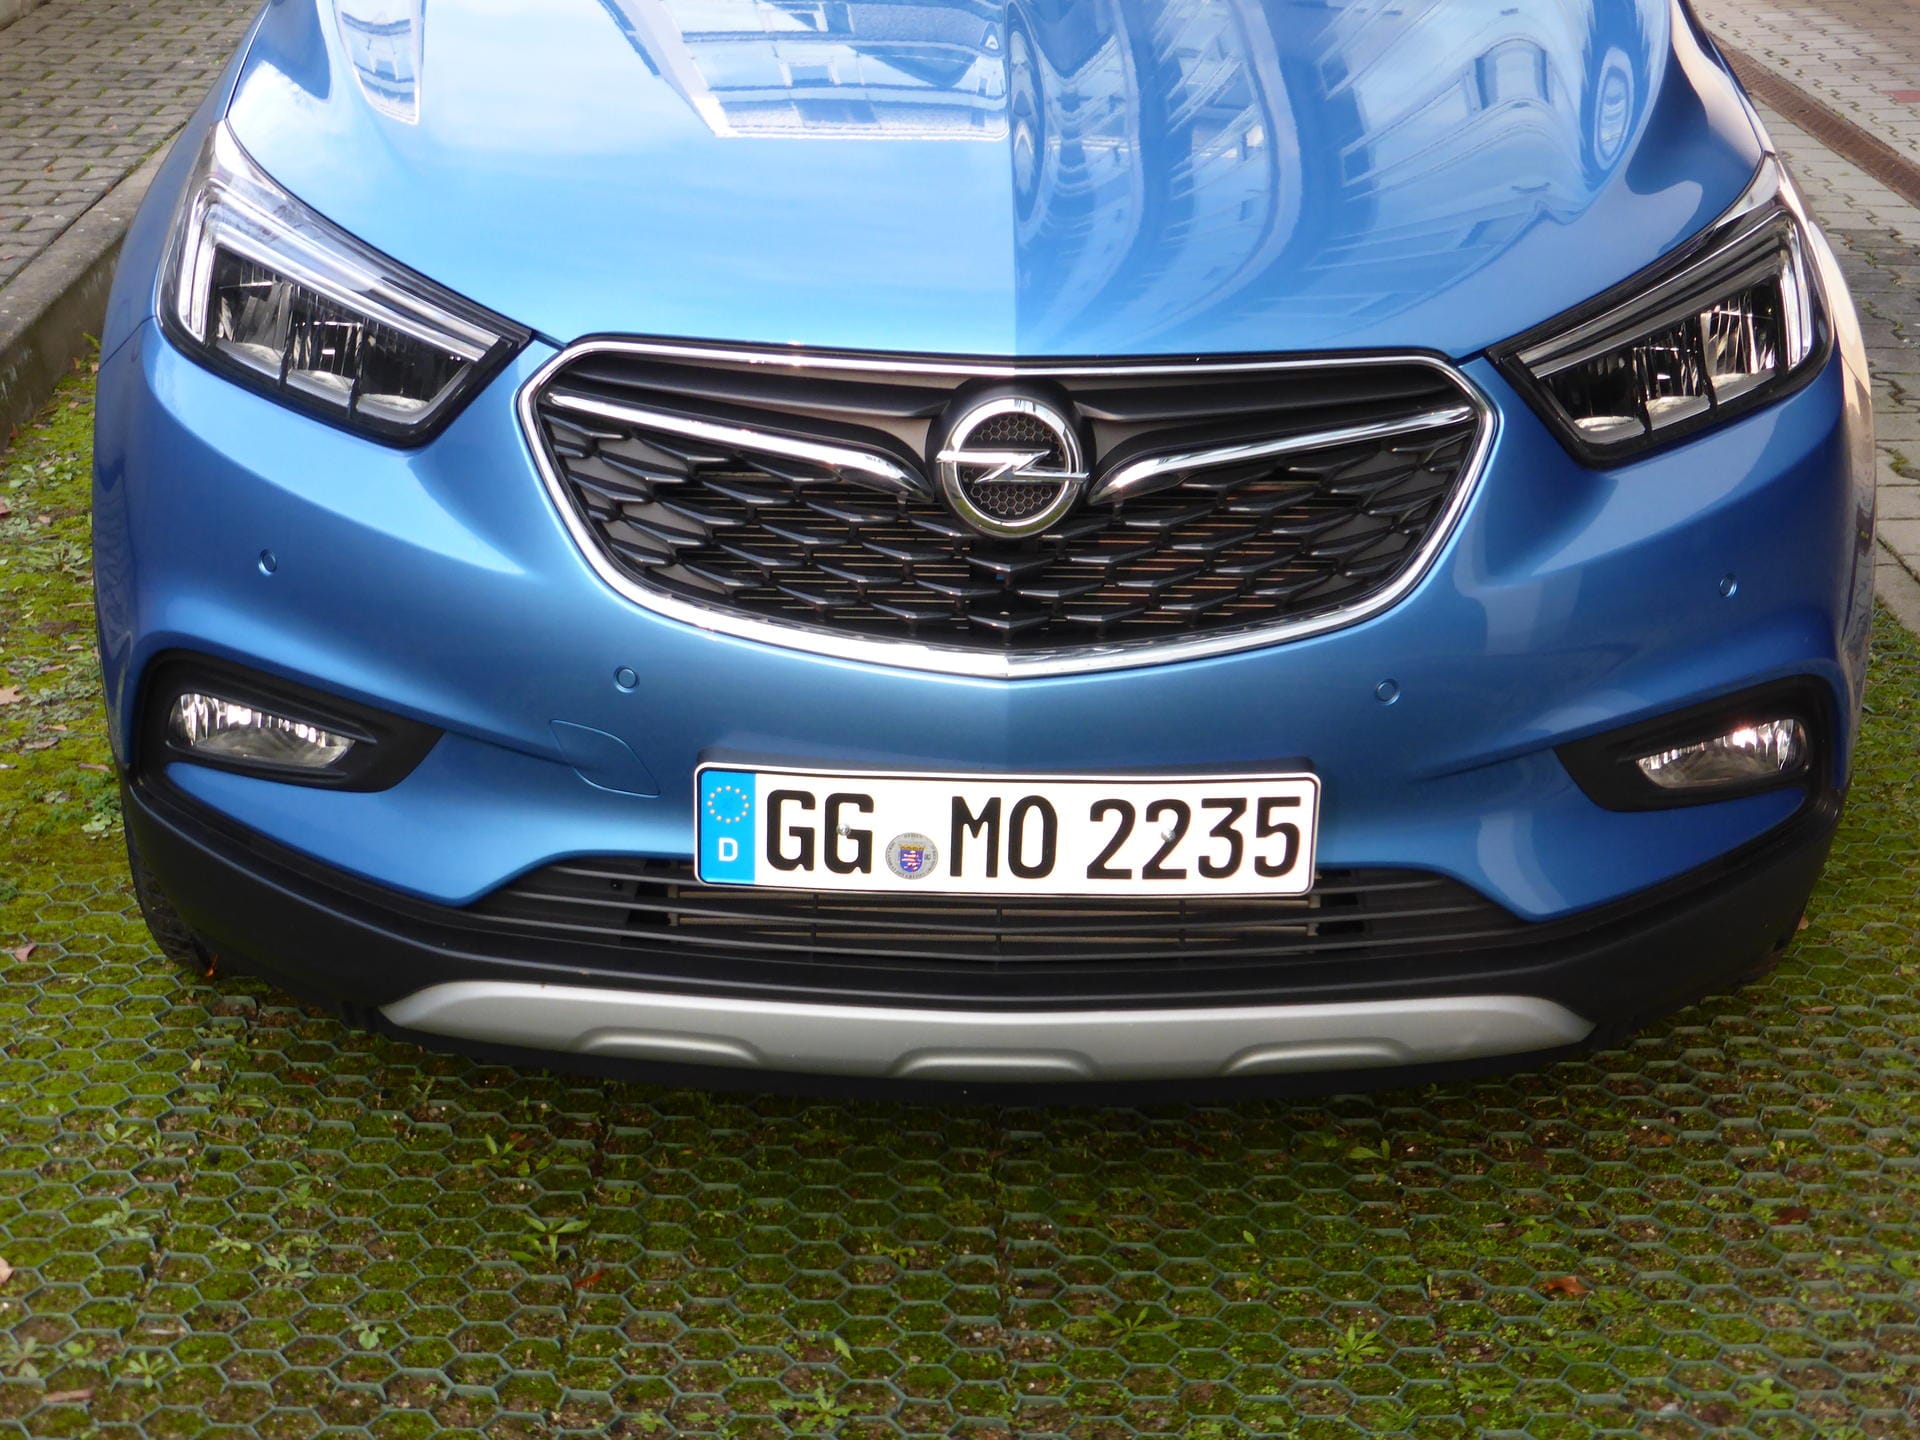 Unterfahrschutz, Sichel-Licht und die markante Opel-Spange - das ist der neue Mokka X.